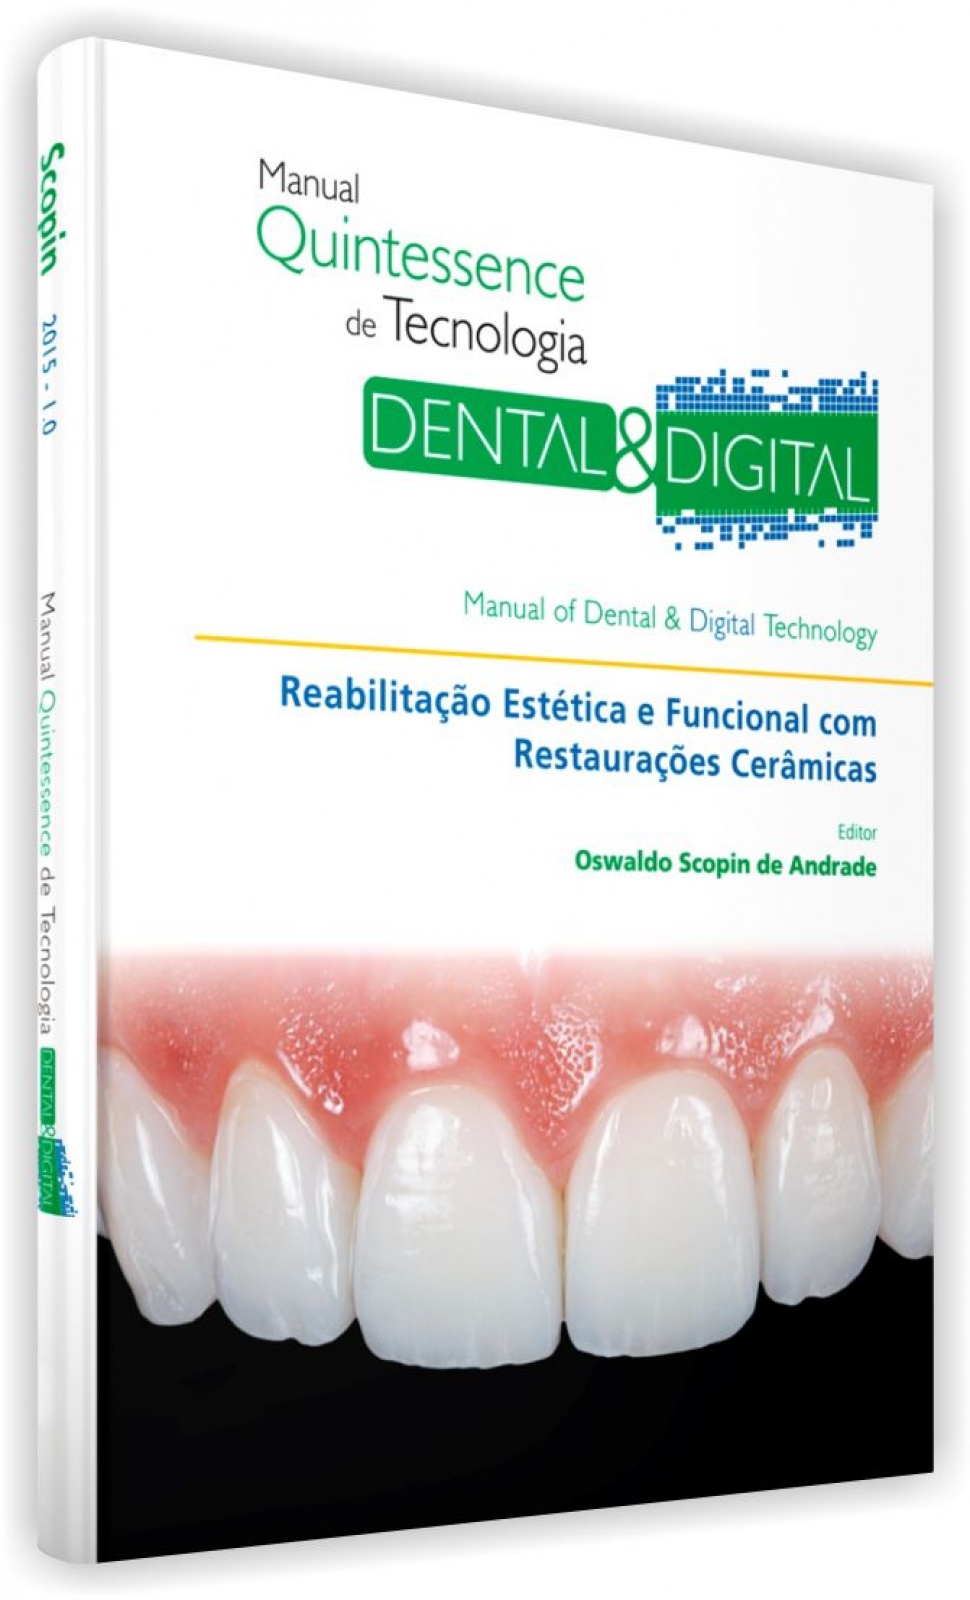 Manual Quintessence De Tecnologia Dental E Digital - Reabilitação Estética E Funcional Com Restaurações Cerâmicas